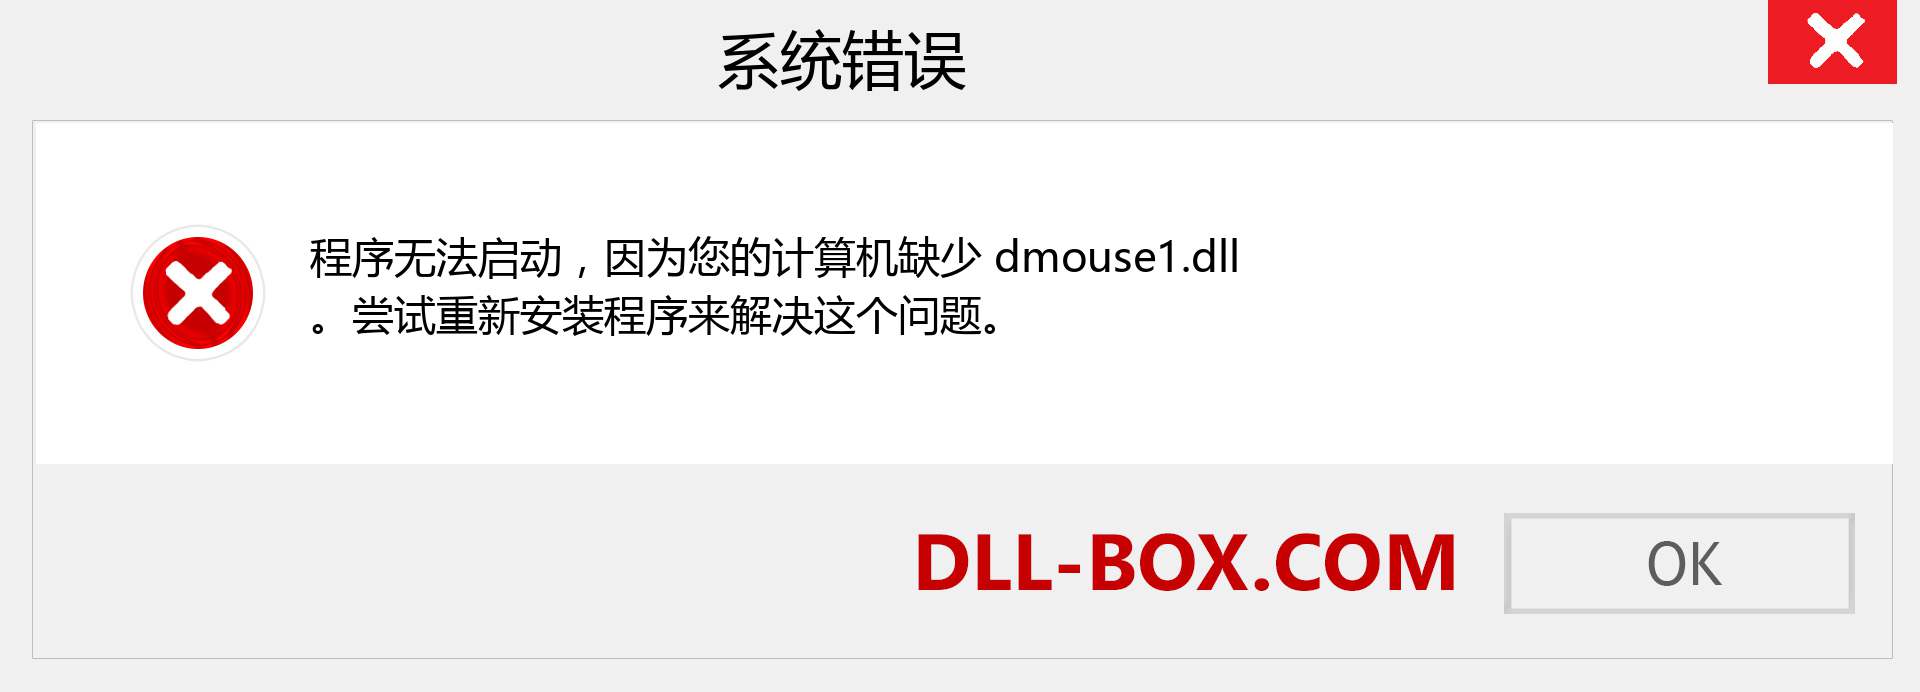 dmouse1.dll 文件丢失？。 适用于 Windows 7、8、10 的下载 - 修复 Windows、照片、图像上的 dmouse1 dll 丢失错误